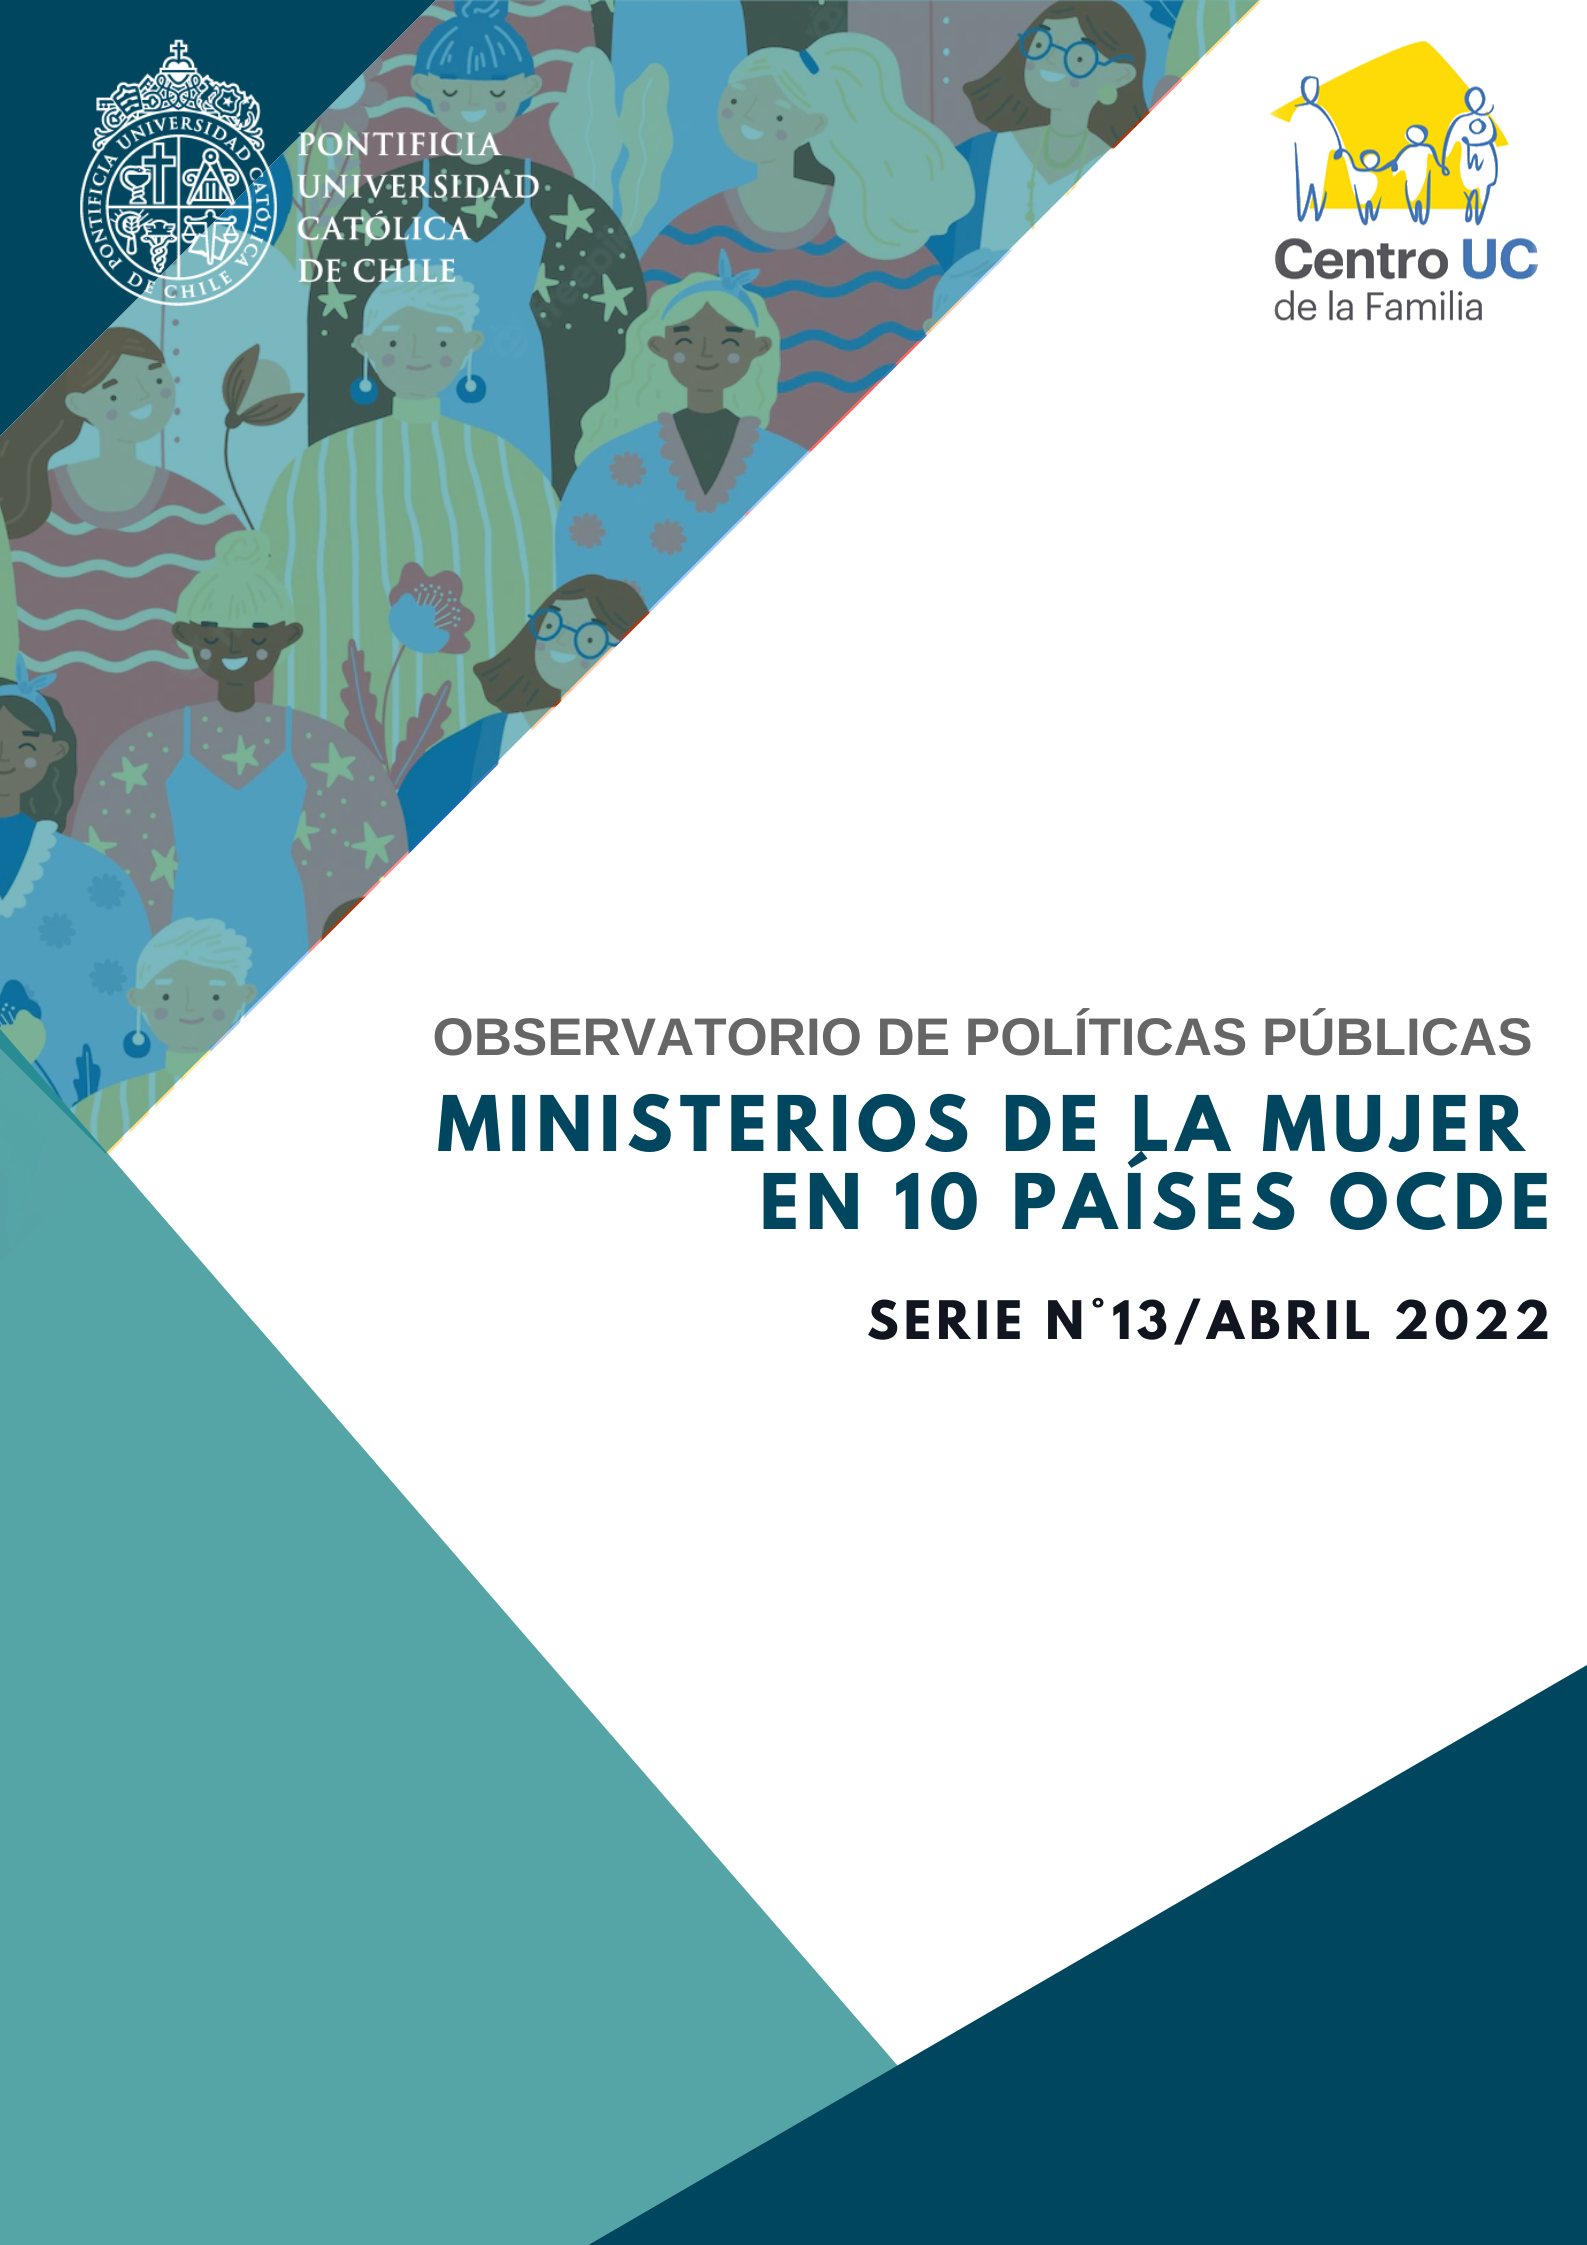 Observatorio de Políticas Públicas: Ministerios de la Mujer en 10 países OCDE - Abril 2022